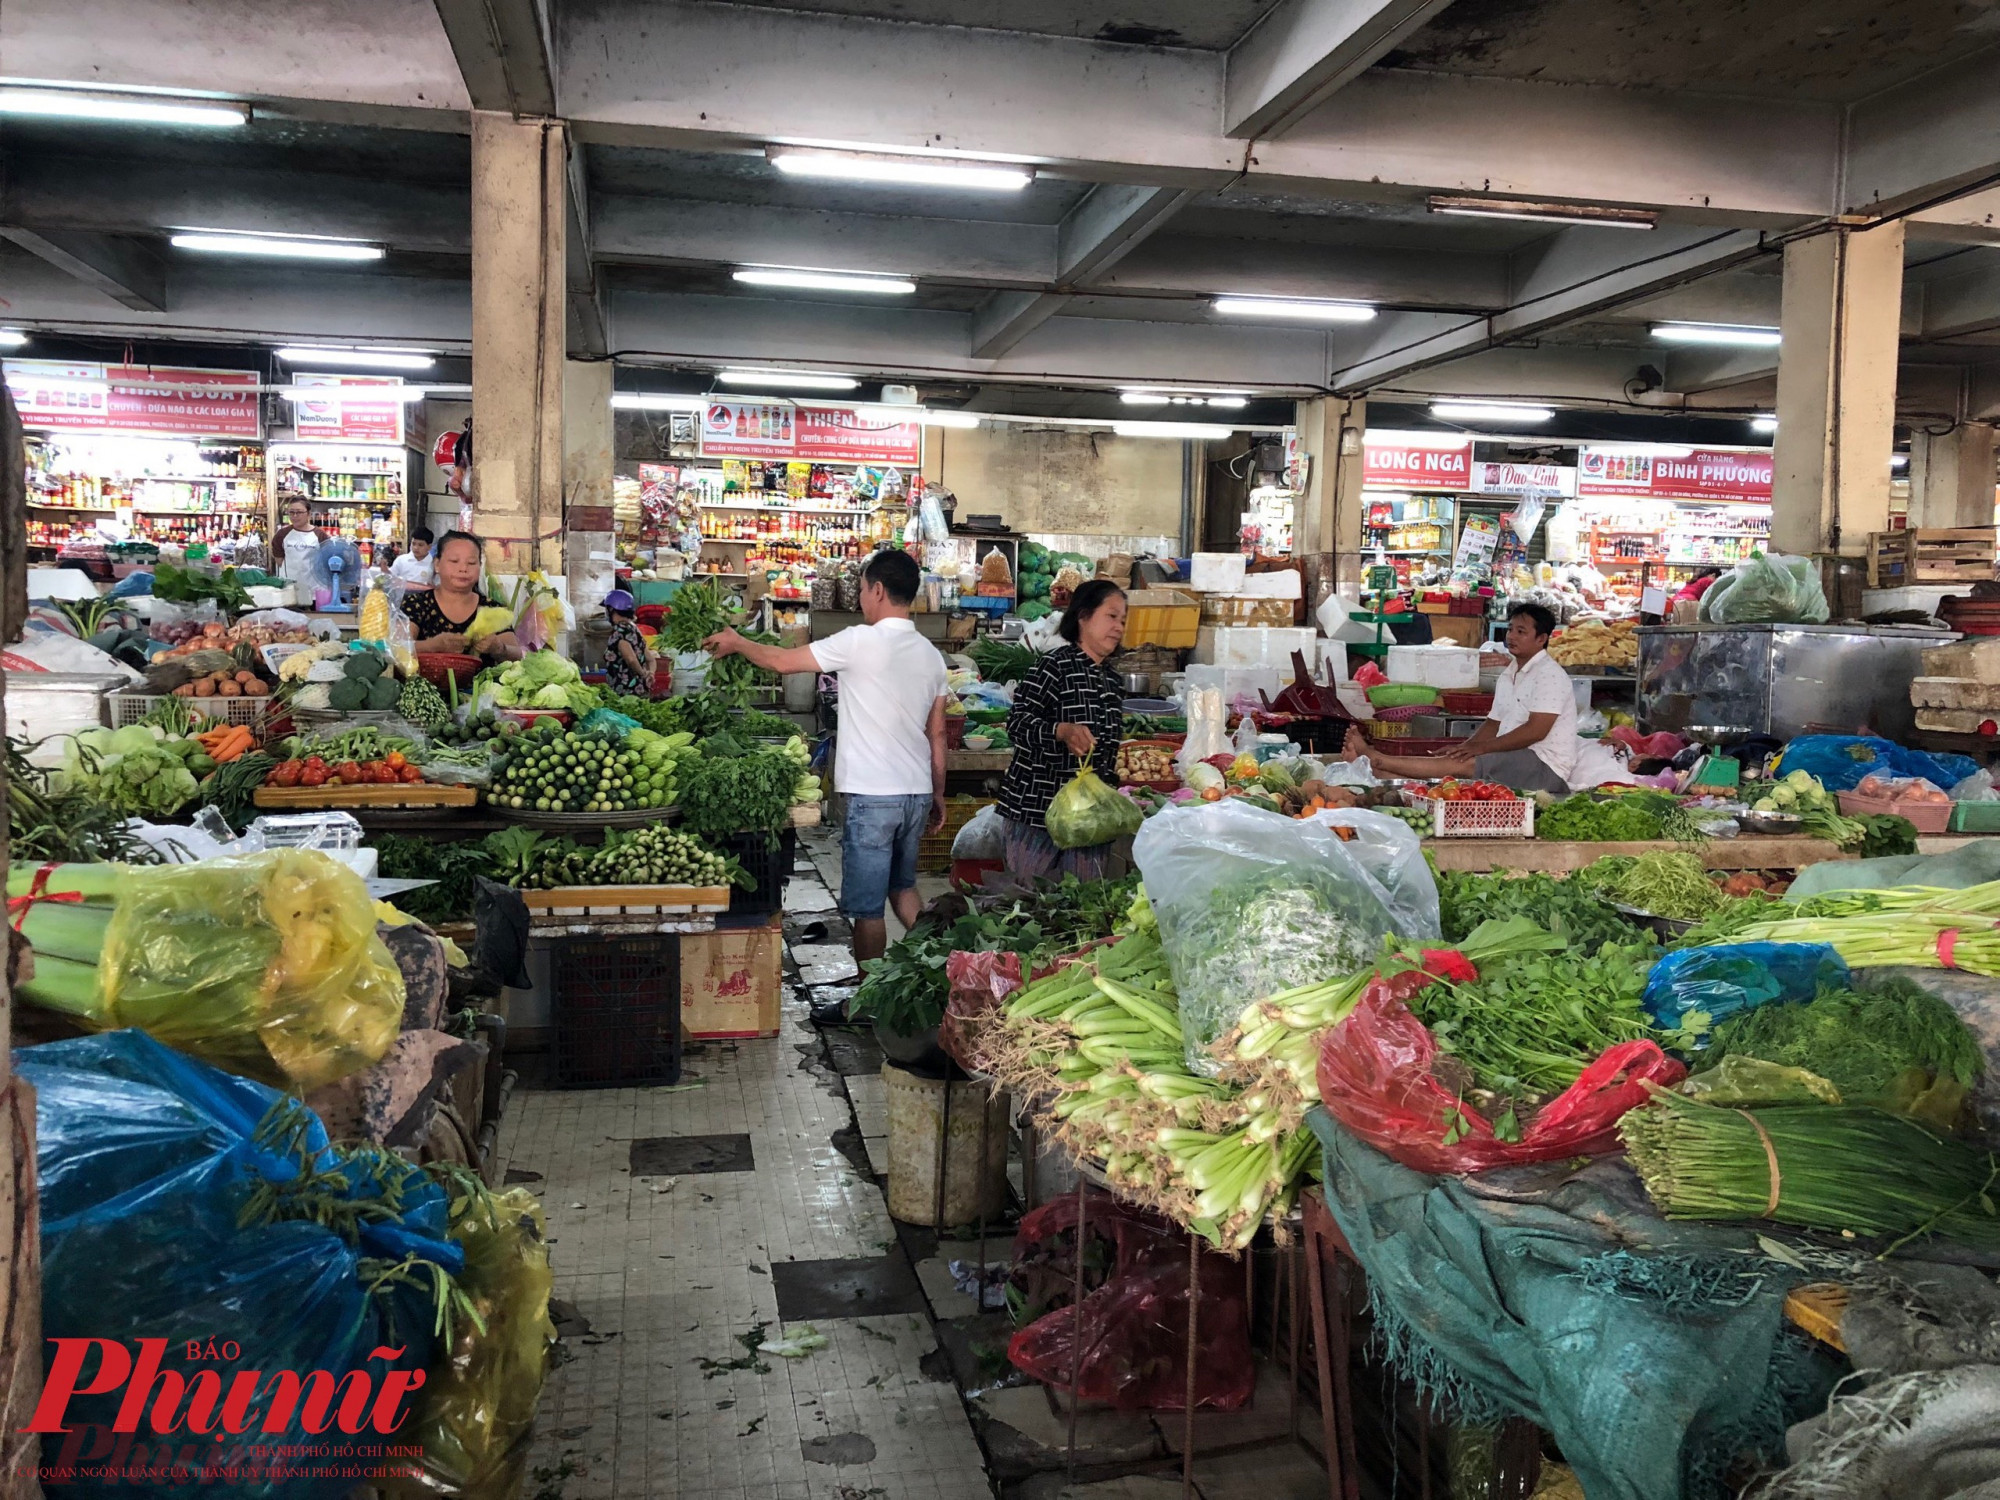 Chị Thuỷ tiểu thương kinh doanh mặt hàng rau củ quả tại chợ An Đông cho biết, chưa có kỳ nghỉ Tết dương lịch nào mà giá thực phẩm lại rẻ, chất lượng tốt như hiện nay. Song khách tới chợ mua thực phẩm rất ít.   